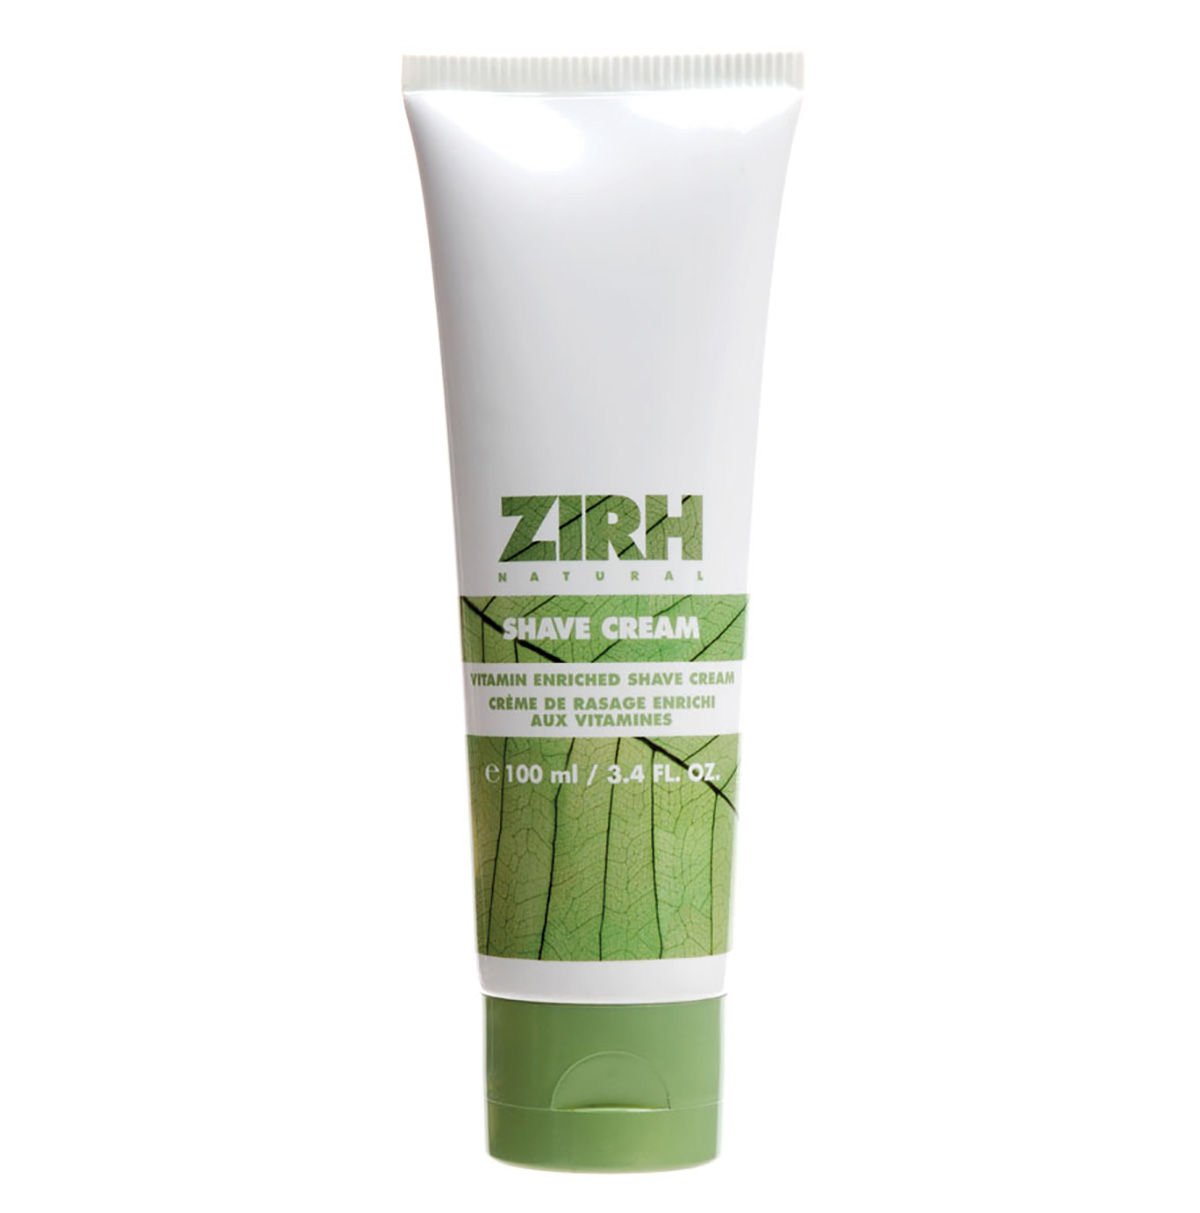 Смарт Уход за кожей   Zirh Skin Nutrition, лидер по производству средств по уходу за кожей для мужчин, представляет линию натуральных средств по уходу за кожей для мужчин, названную Zirh Natural